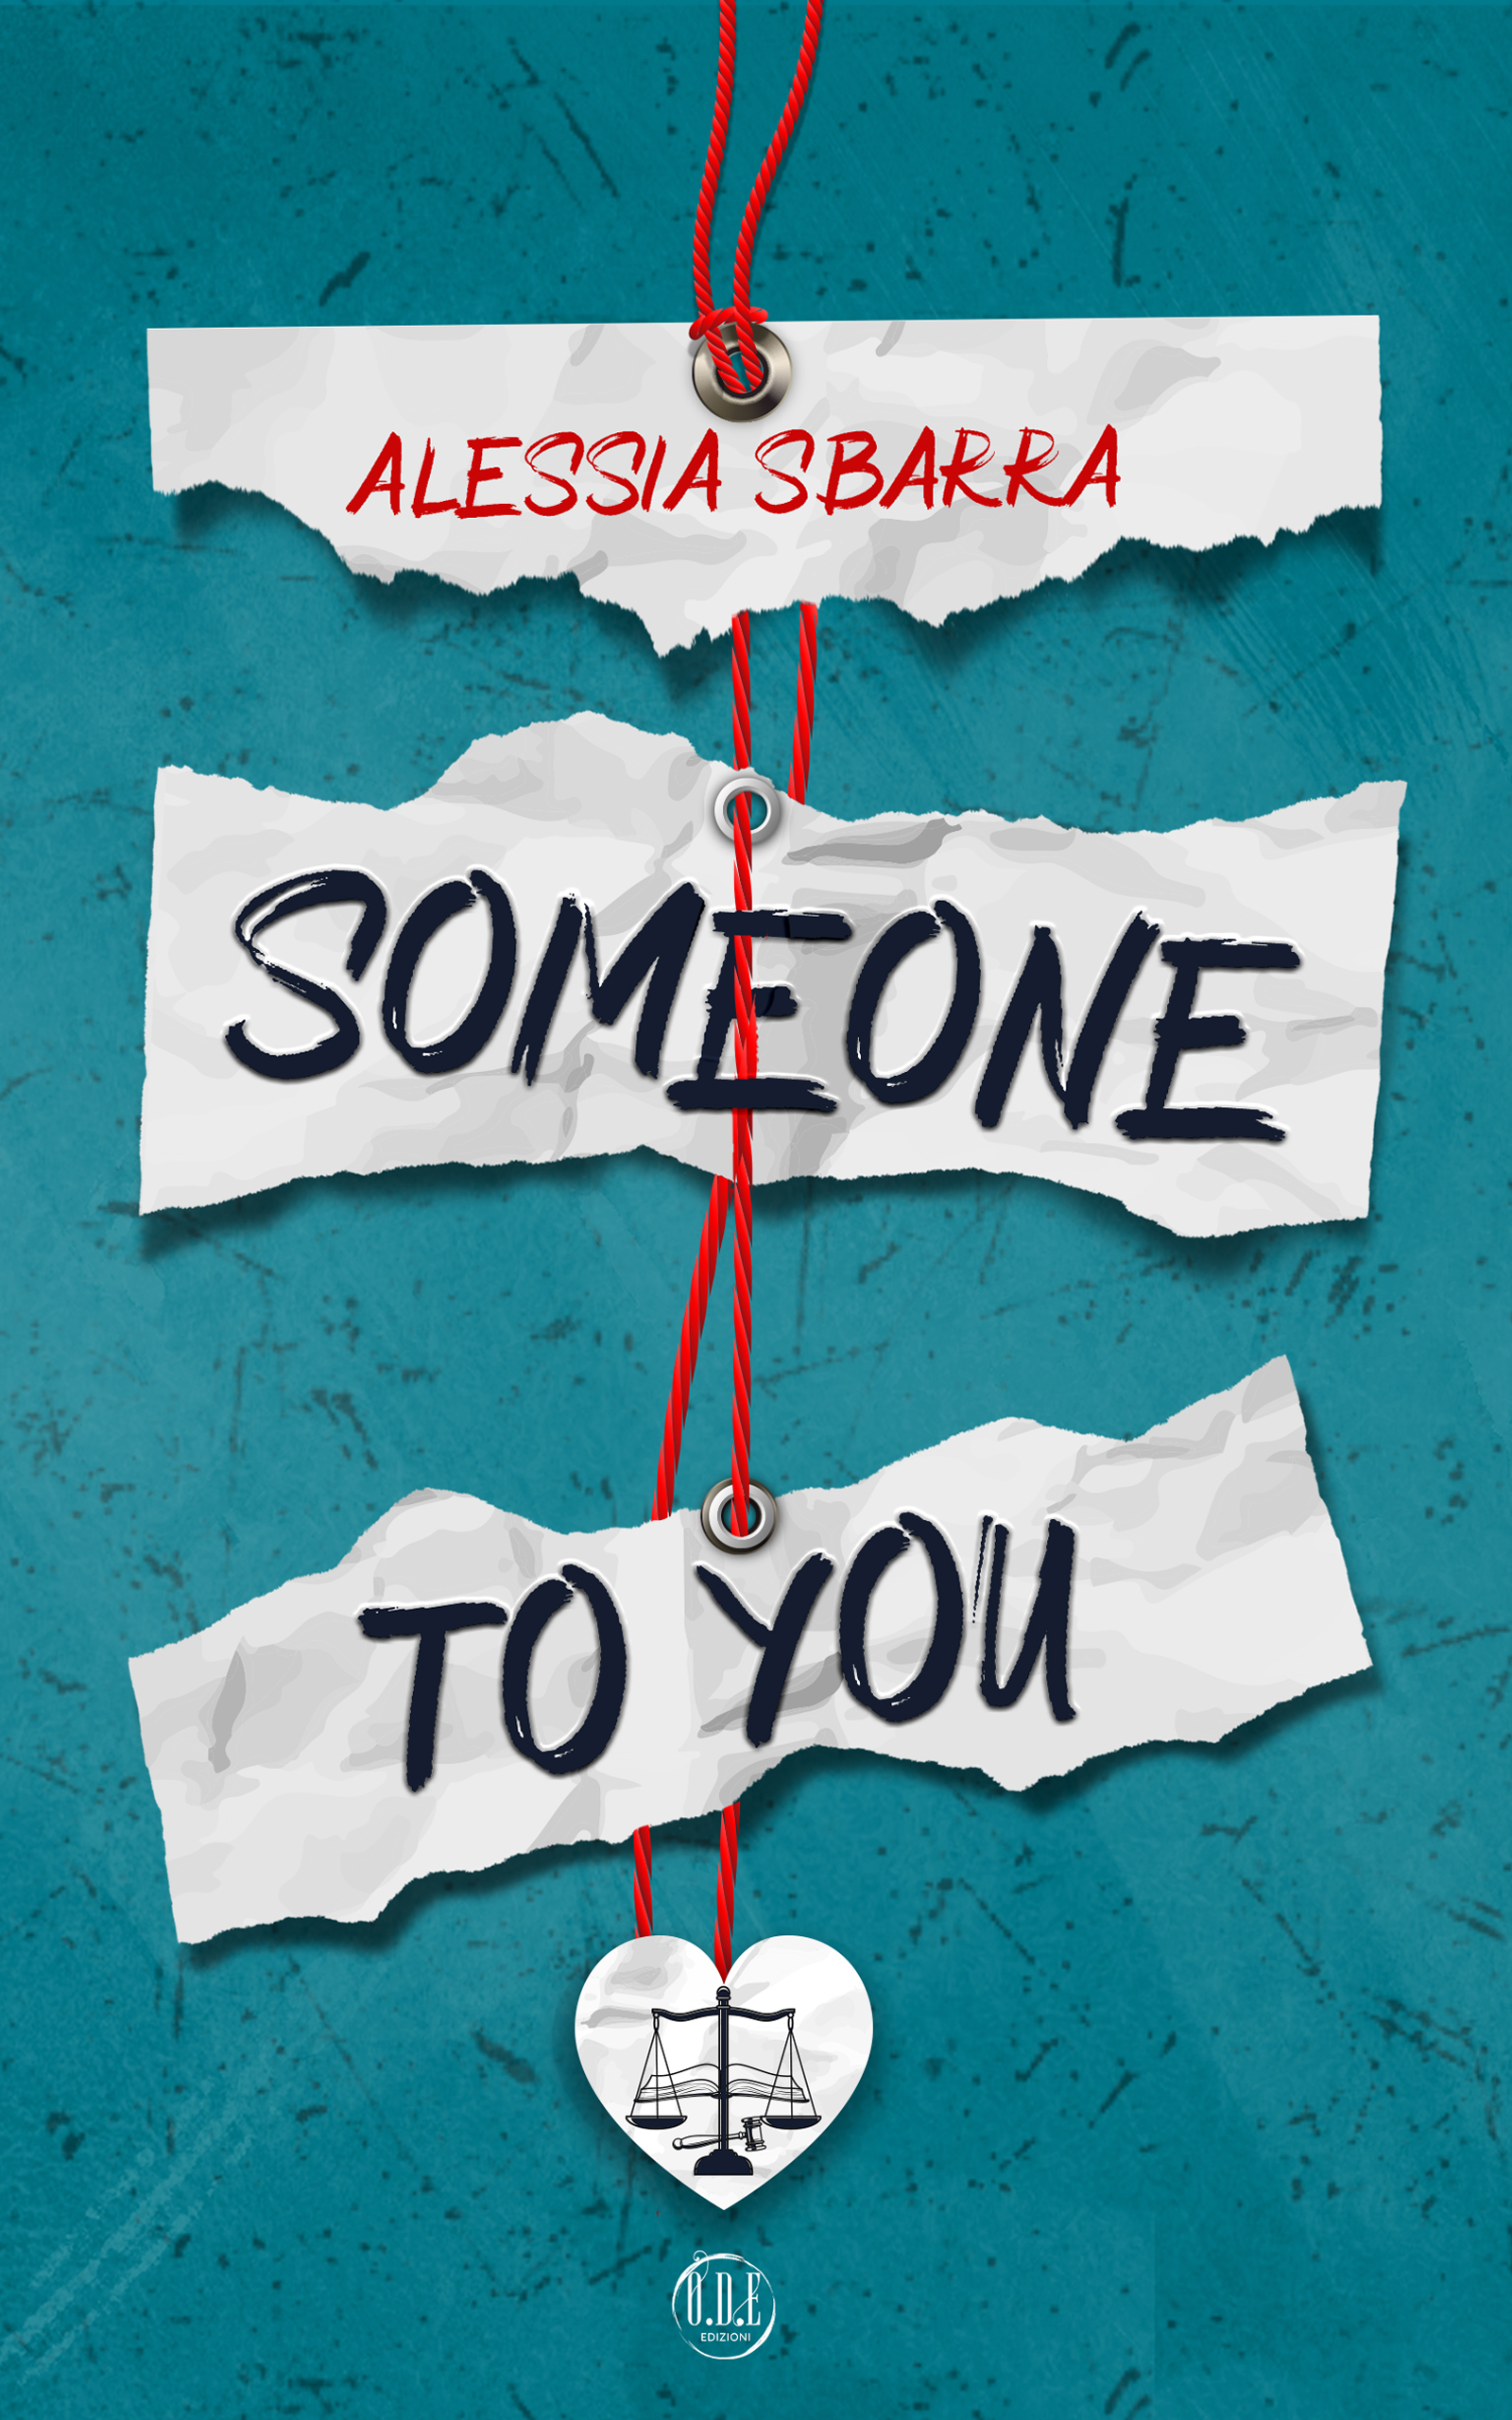 Segnalazione di uscita “Someone to you” di Alessia Sbarra